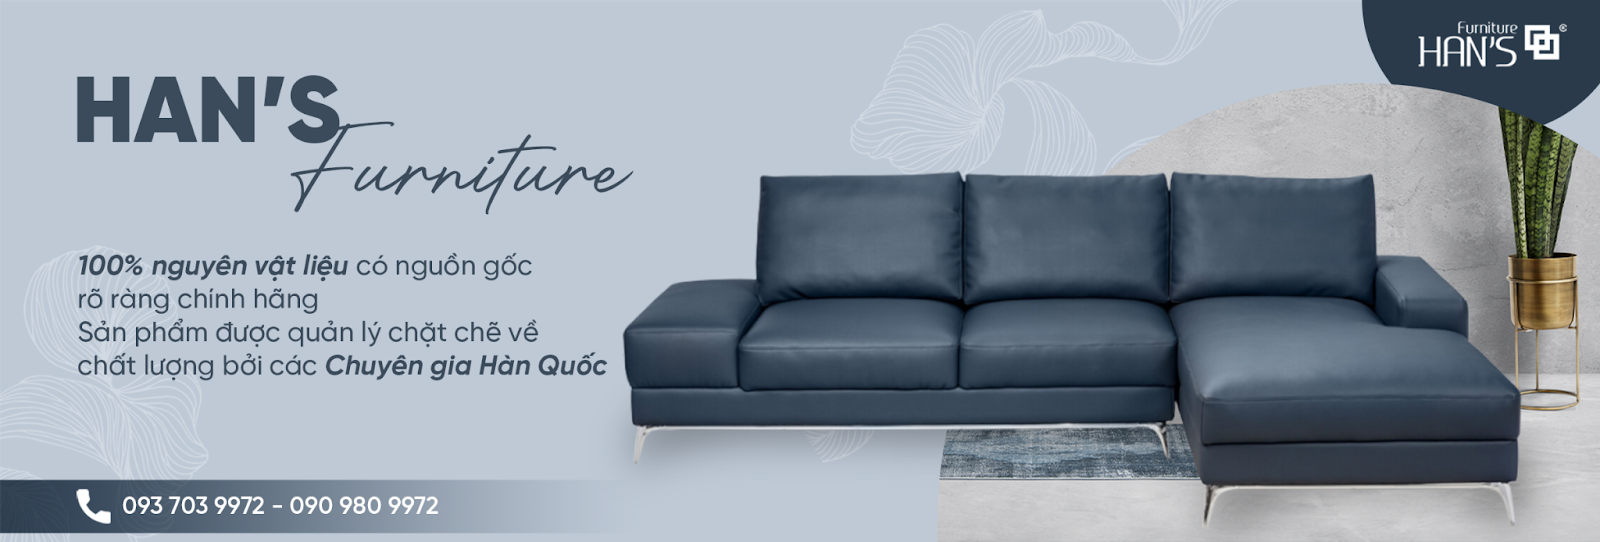 Han’s Furniture- Đơn vị chuyên cung cấp những sản phẩm nội thất uy tín